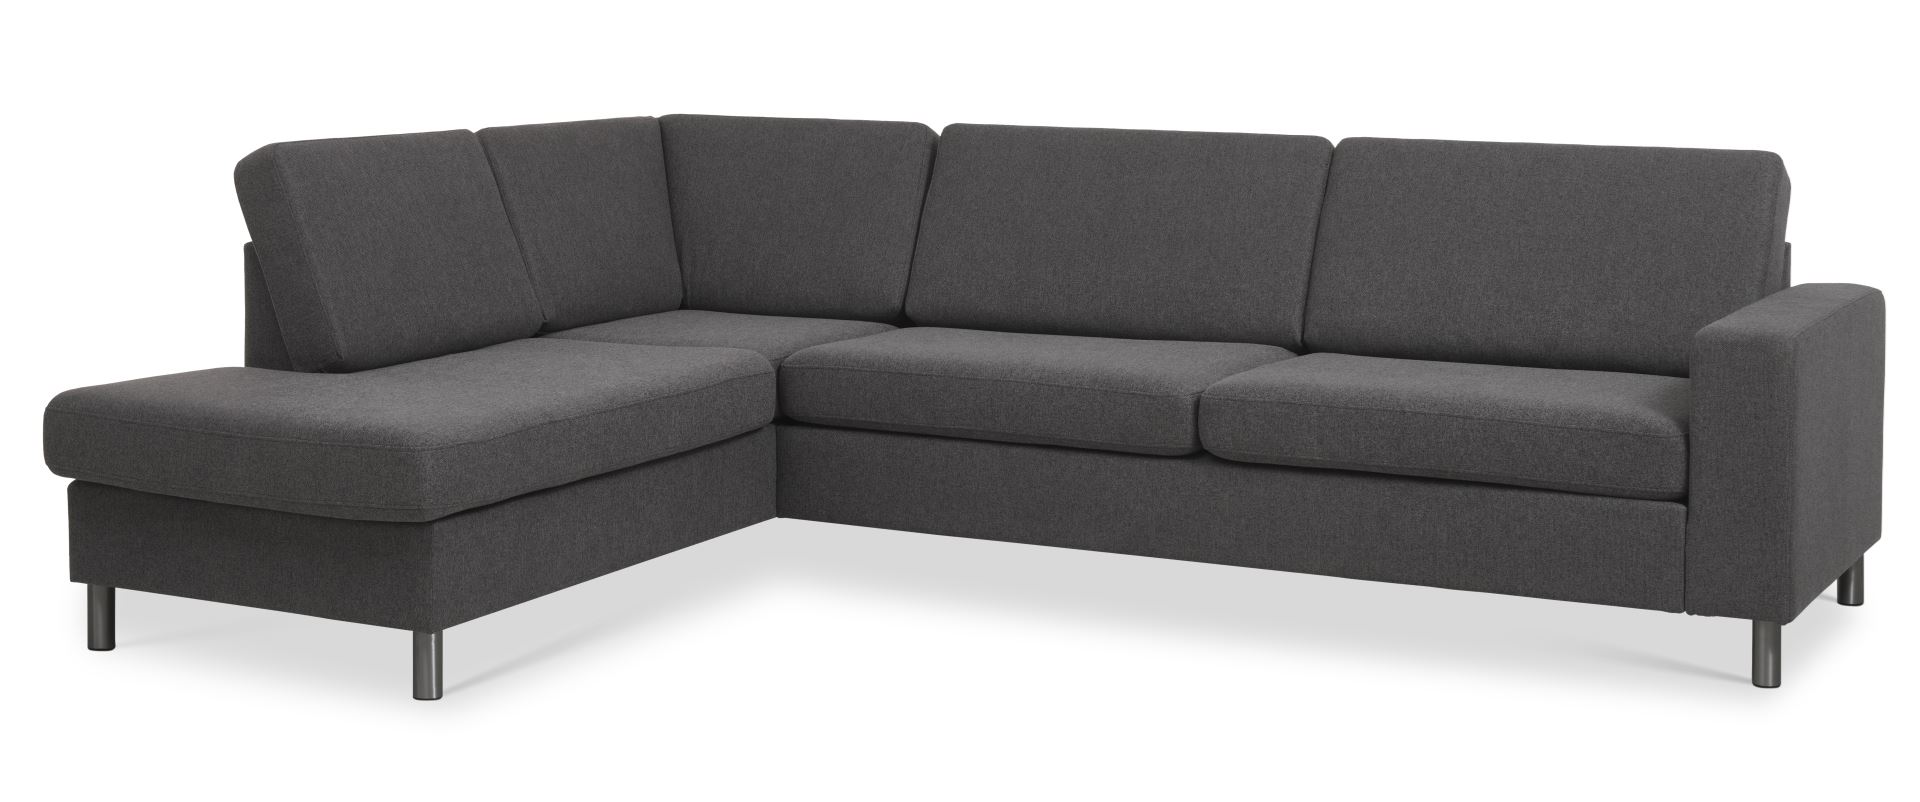 Pan set 2 OE left sofa med chaiselong - antracitgrå polyester stof og børstet aluminium